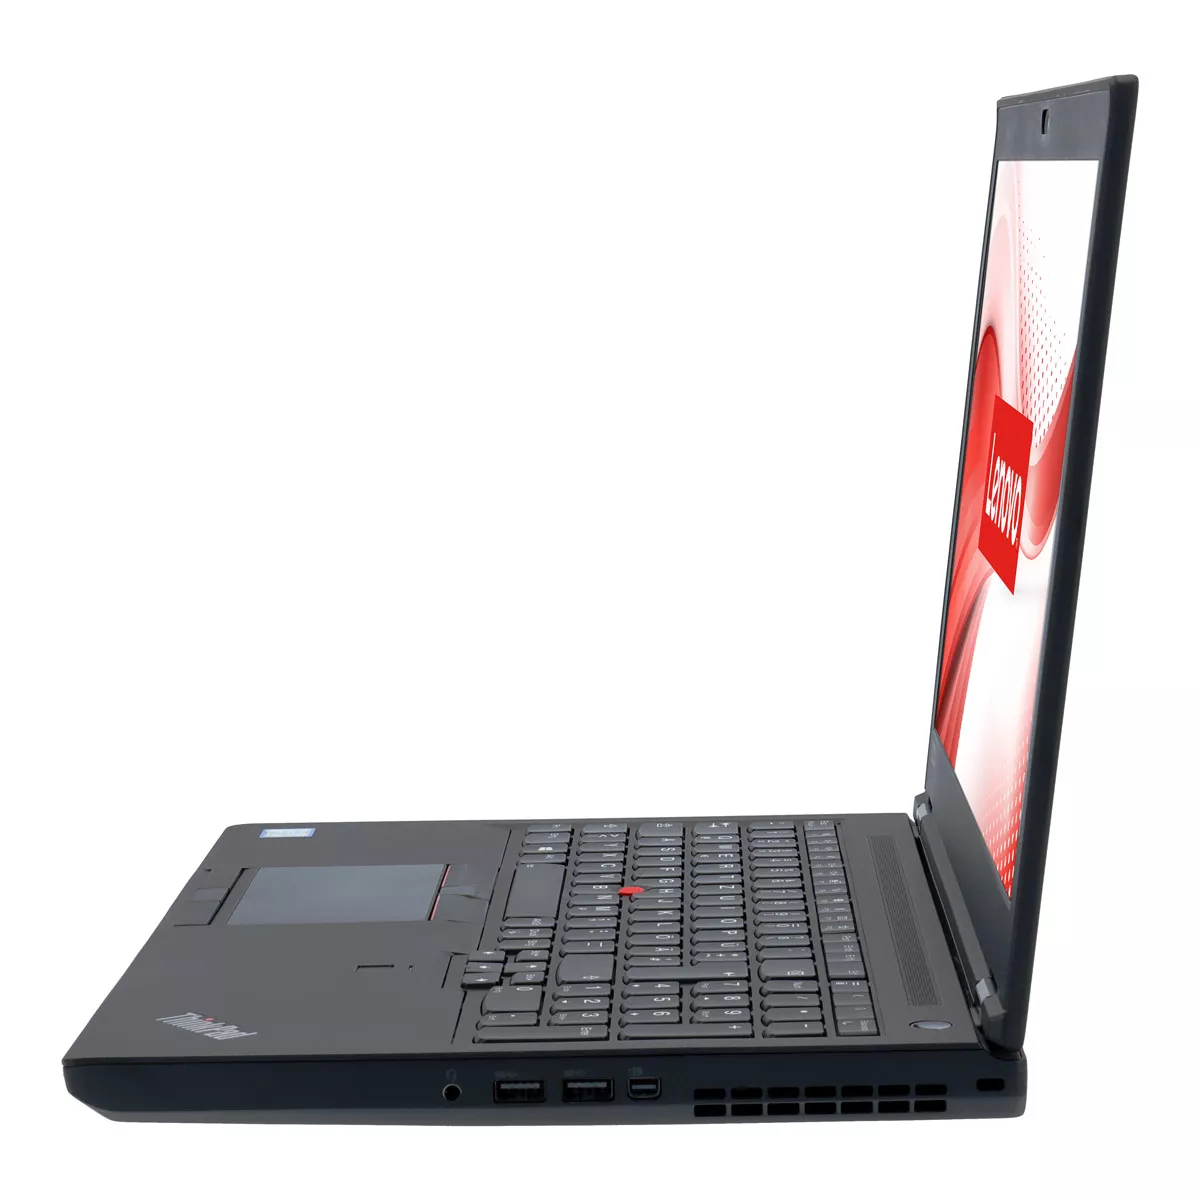 Lenovo ThinkPad P52 Core i7 8850H nVidia Quadro P2000M 32 GB 500 GB M.2 SSD Webcam B